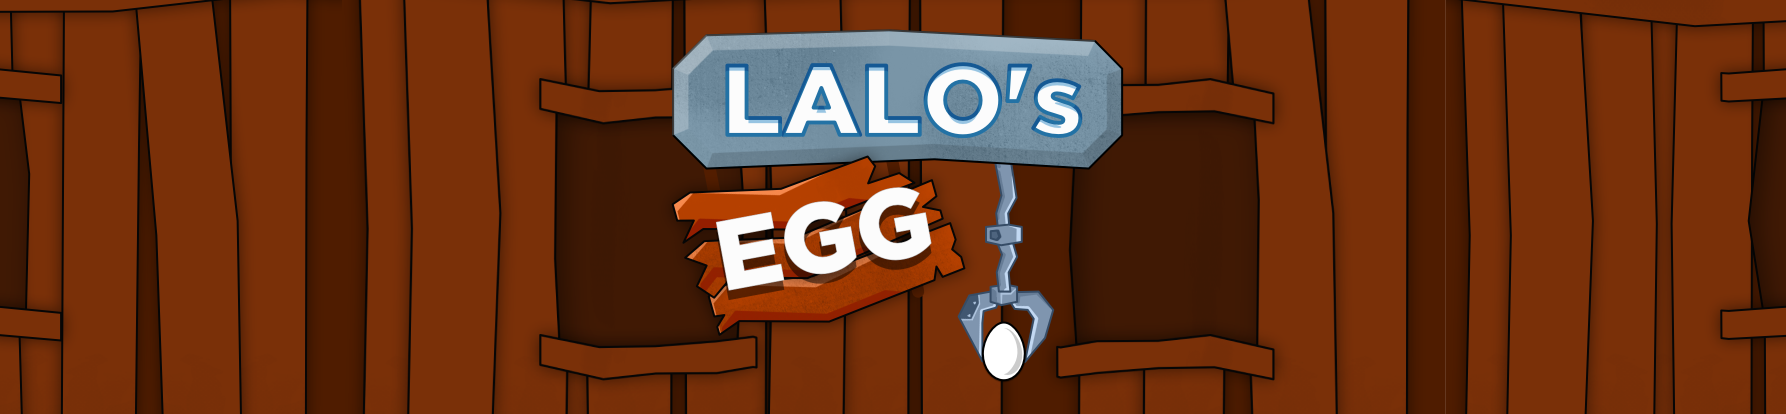 Lalo's Egg